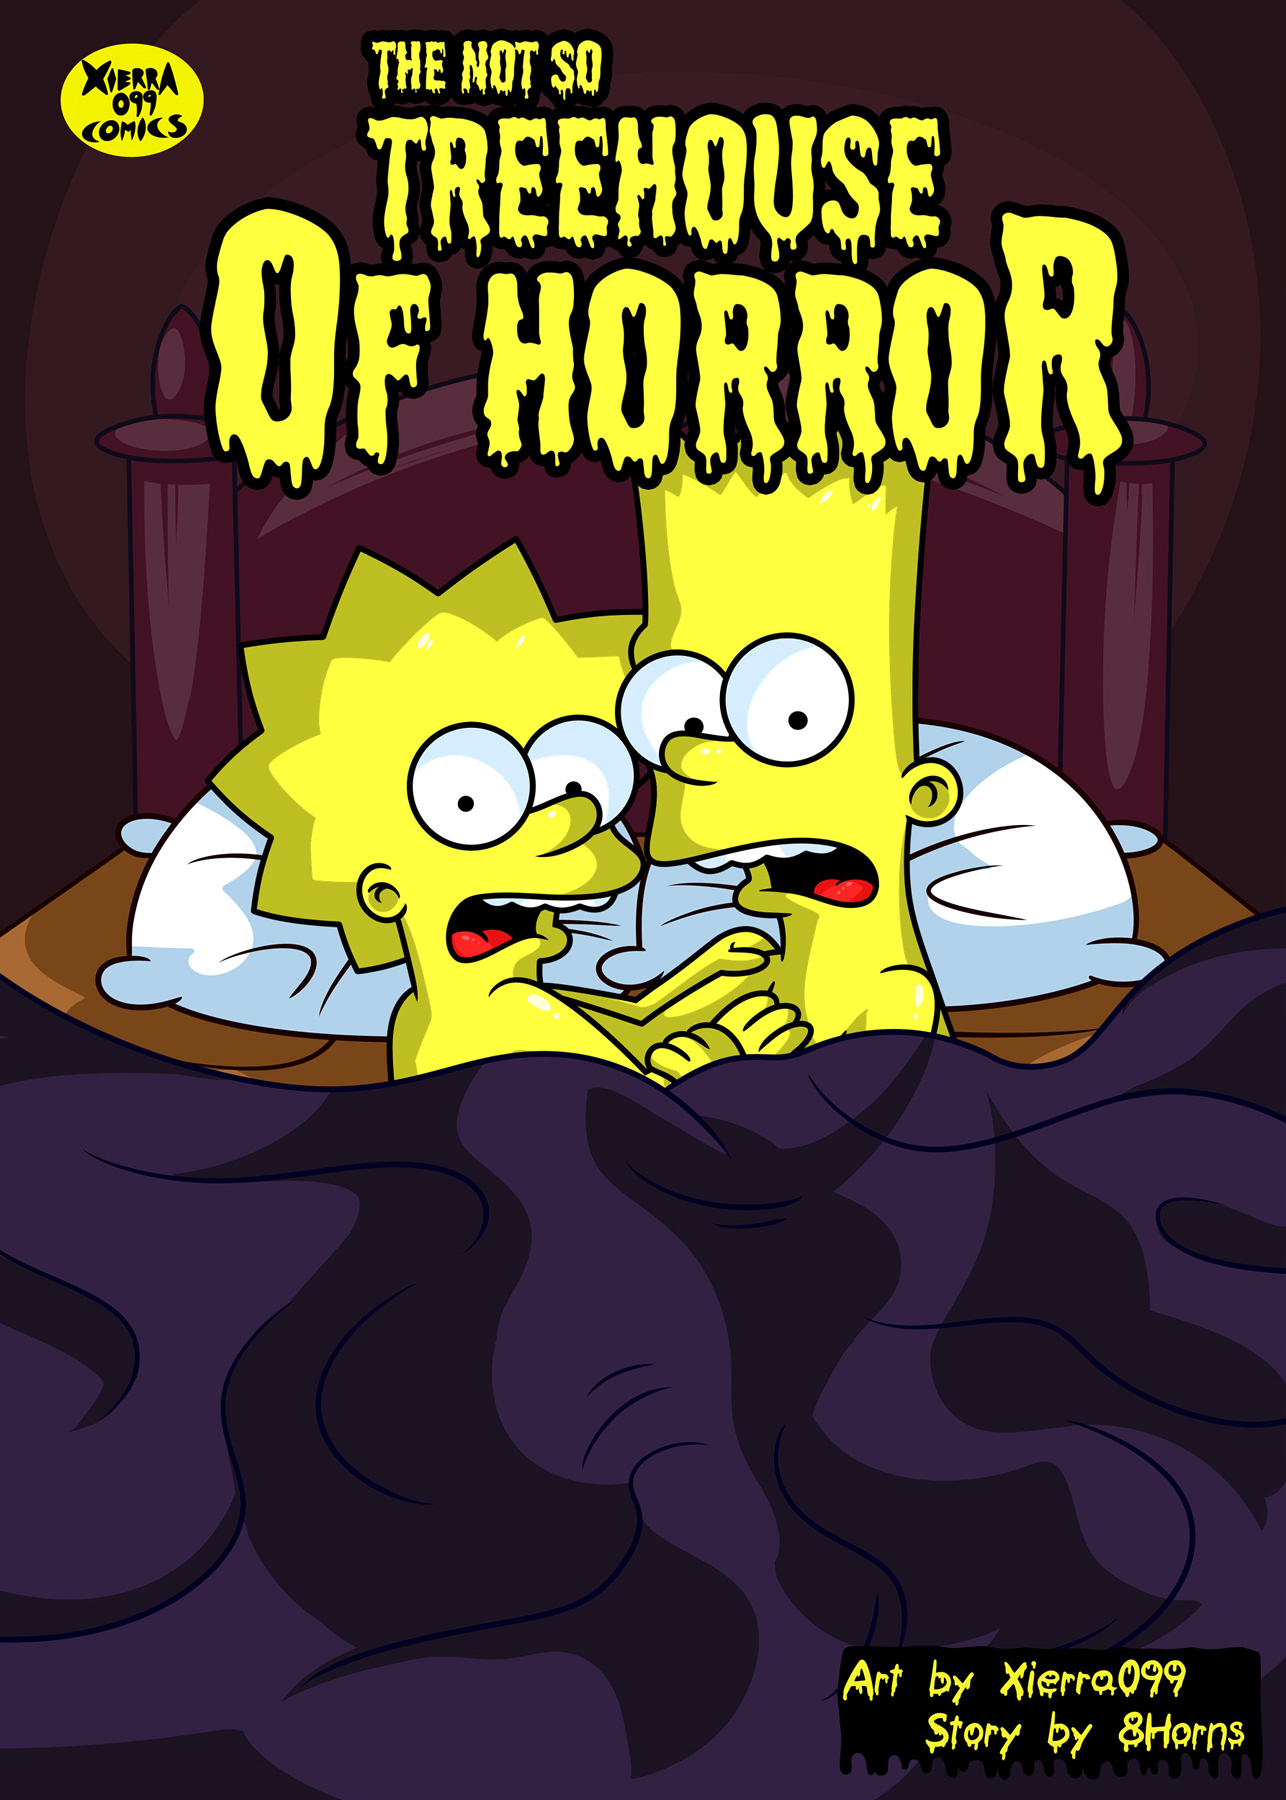 Lisa And Maggie Toon Porn - Los Simpsons Porno: Sexo Incesto entre Bart y Lisa - Vercomicsporno